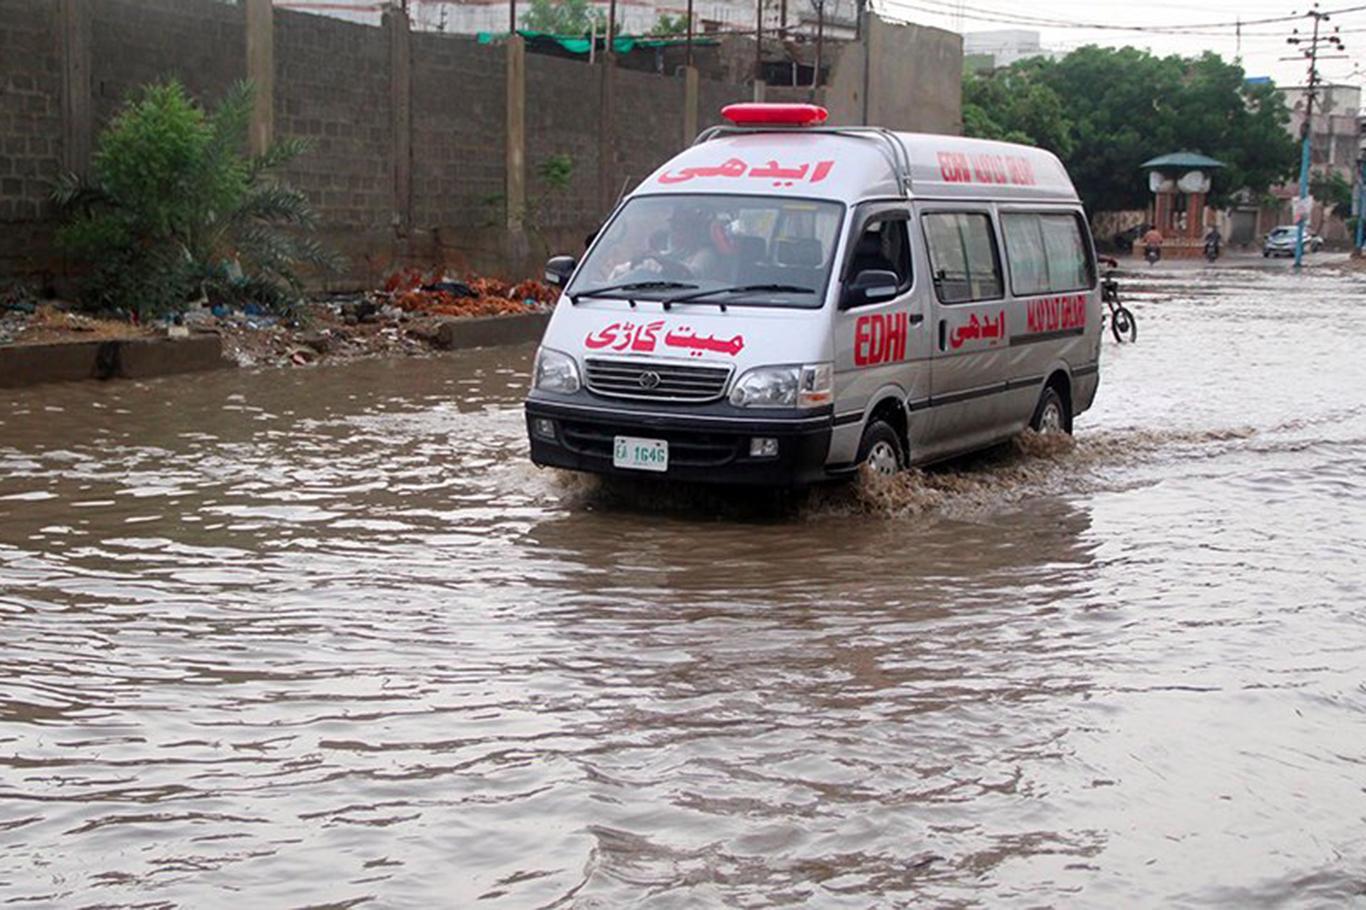 7 people die in flash floods in Pakistan